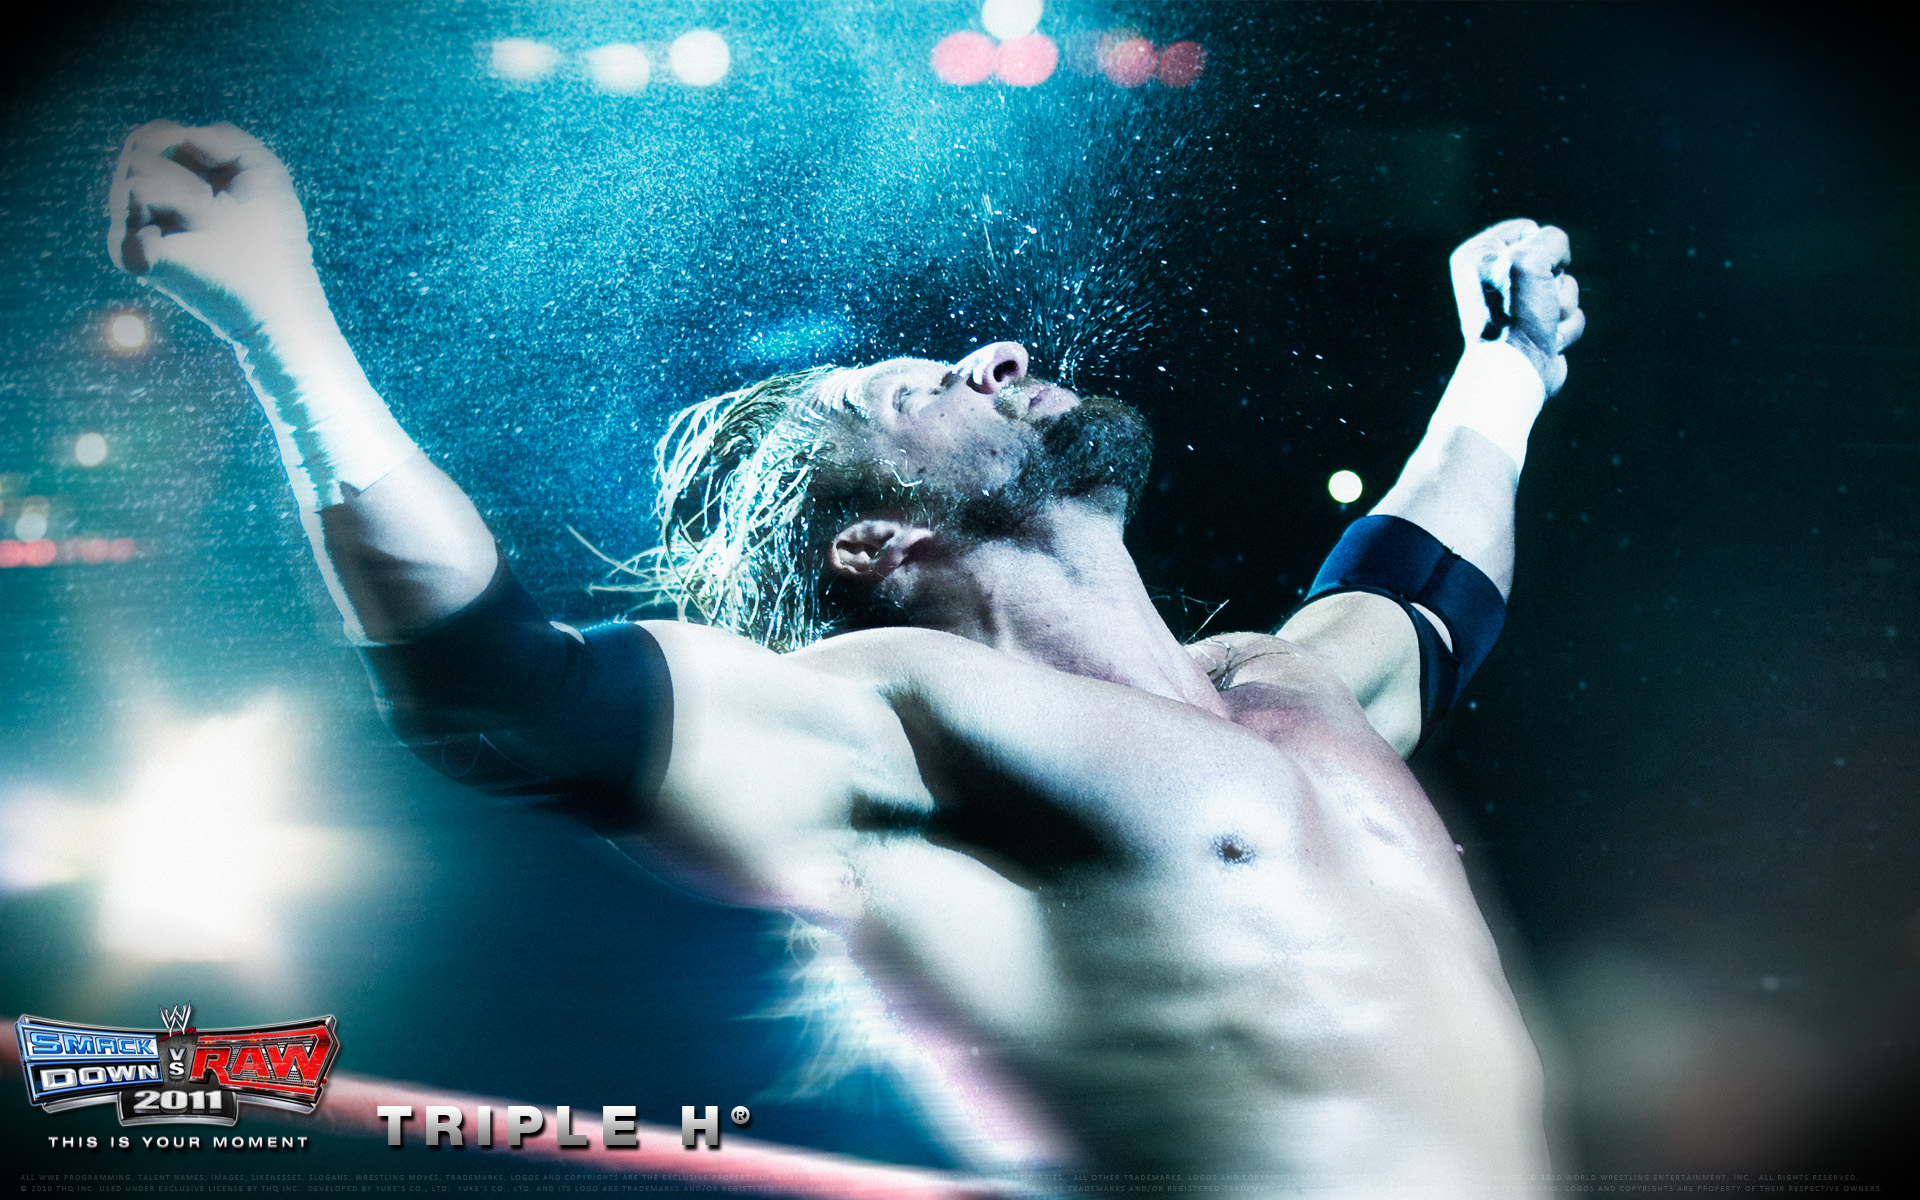 Wwe Smackdown Vs Raw 2011 Triple H Wallpaper